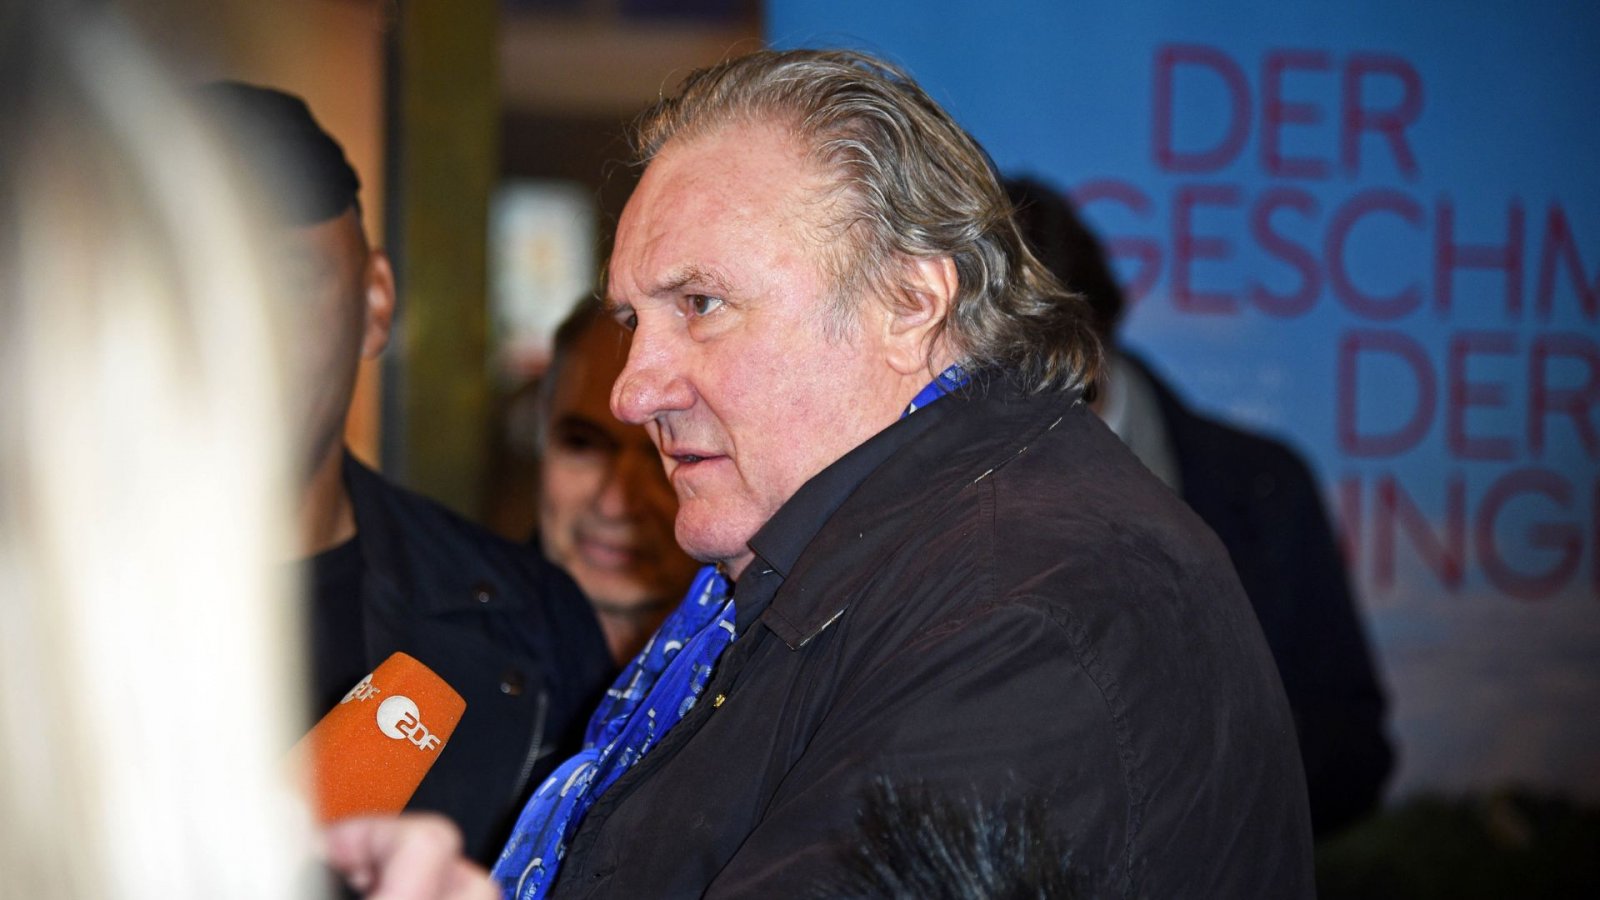 Gerard Depardieu accusato di molestie sessuali da 13 donne diverse